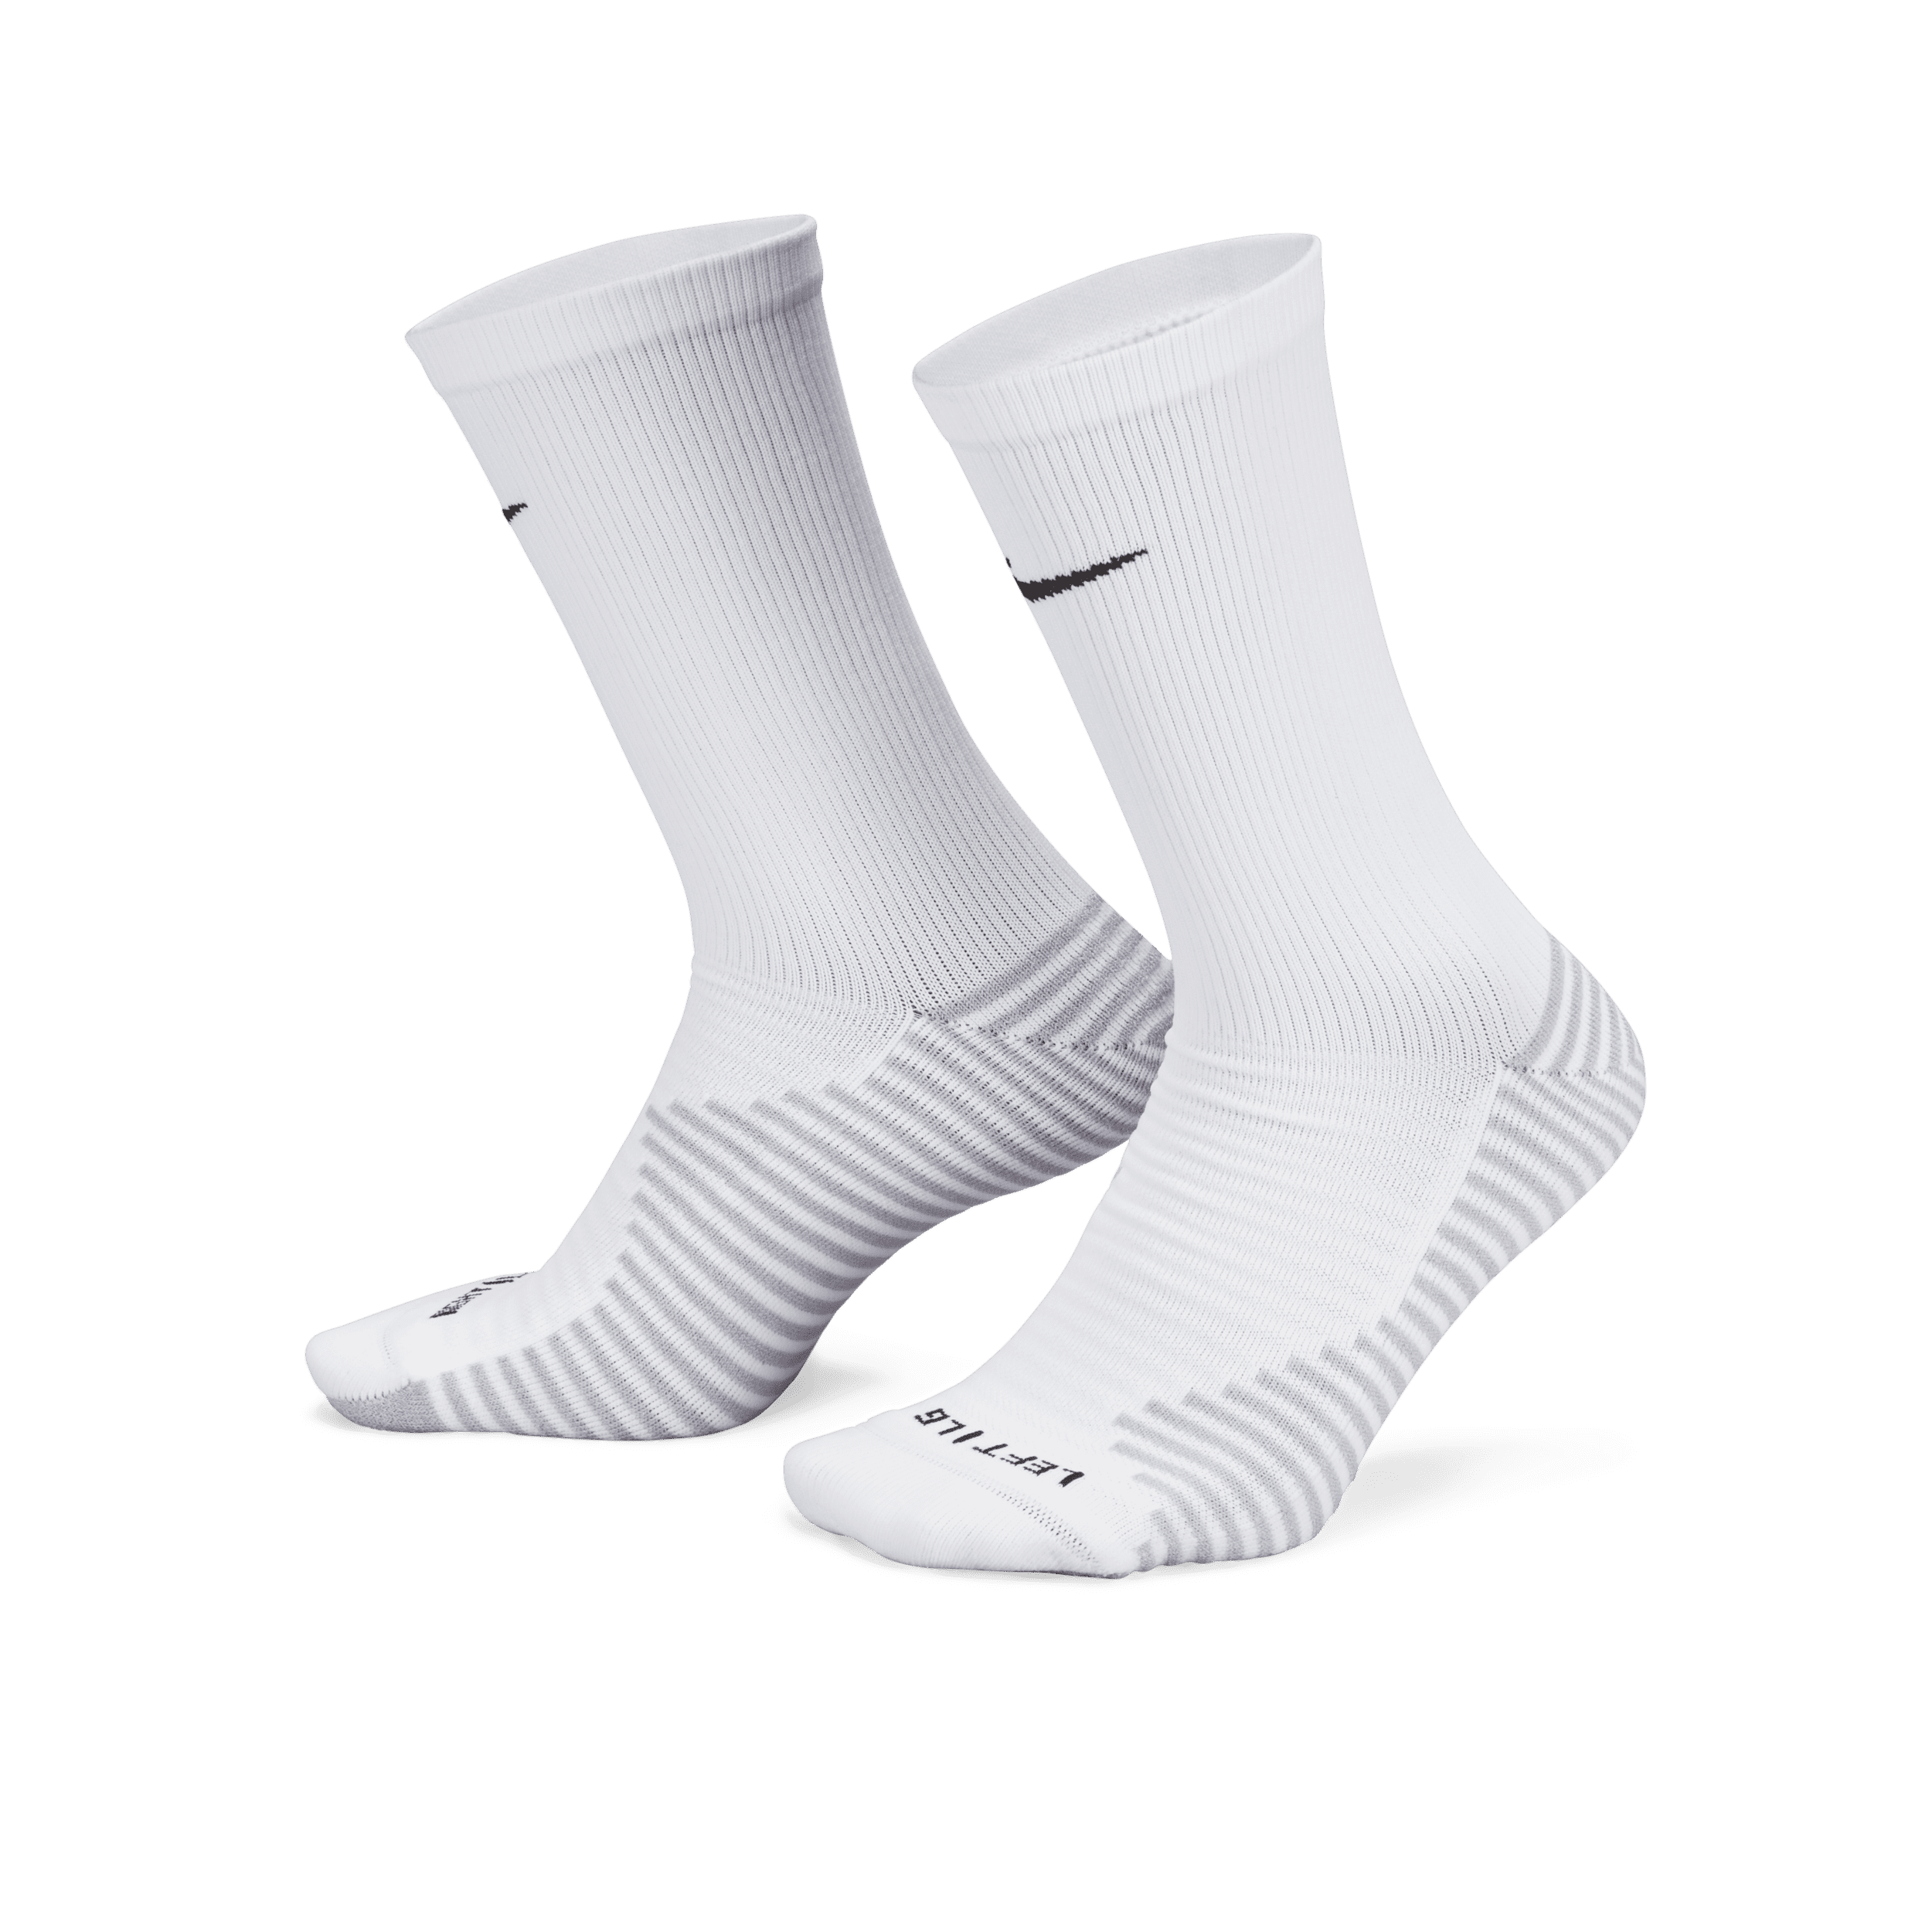 Calze da calcio Nike Strike di media lunghezza - Bianco